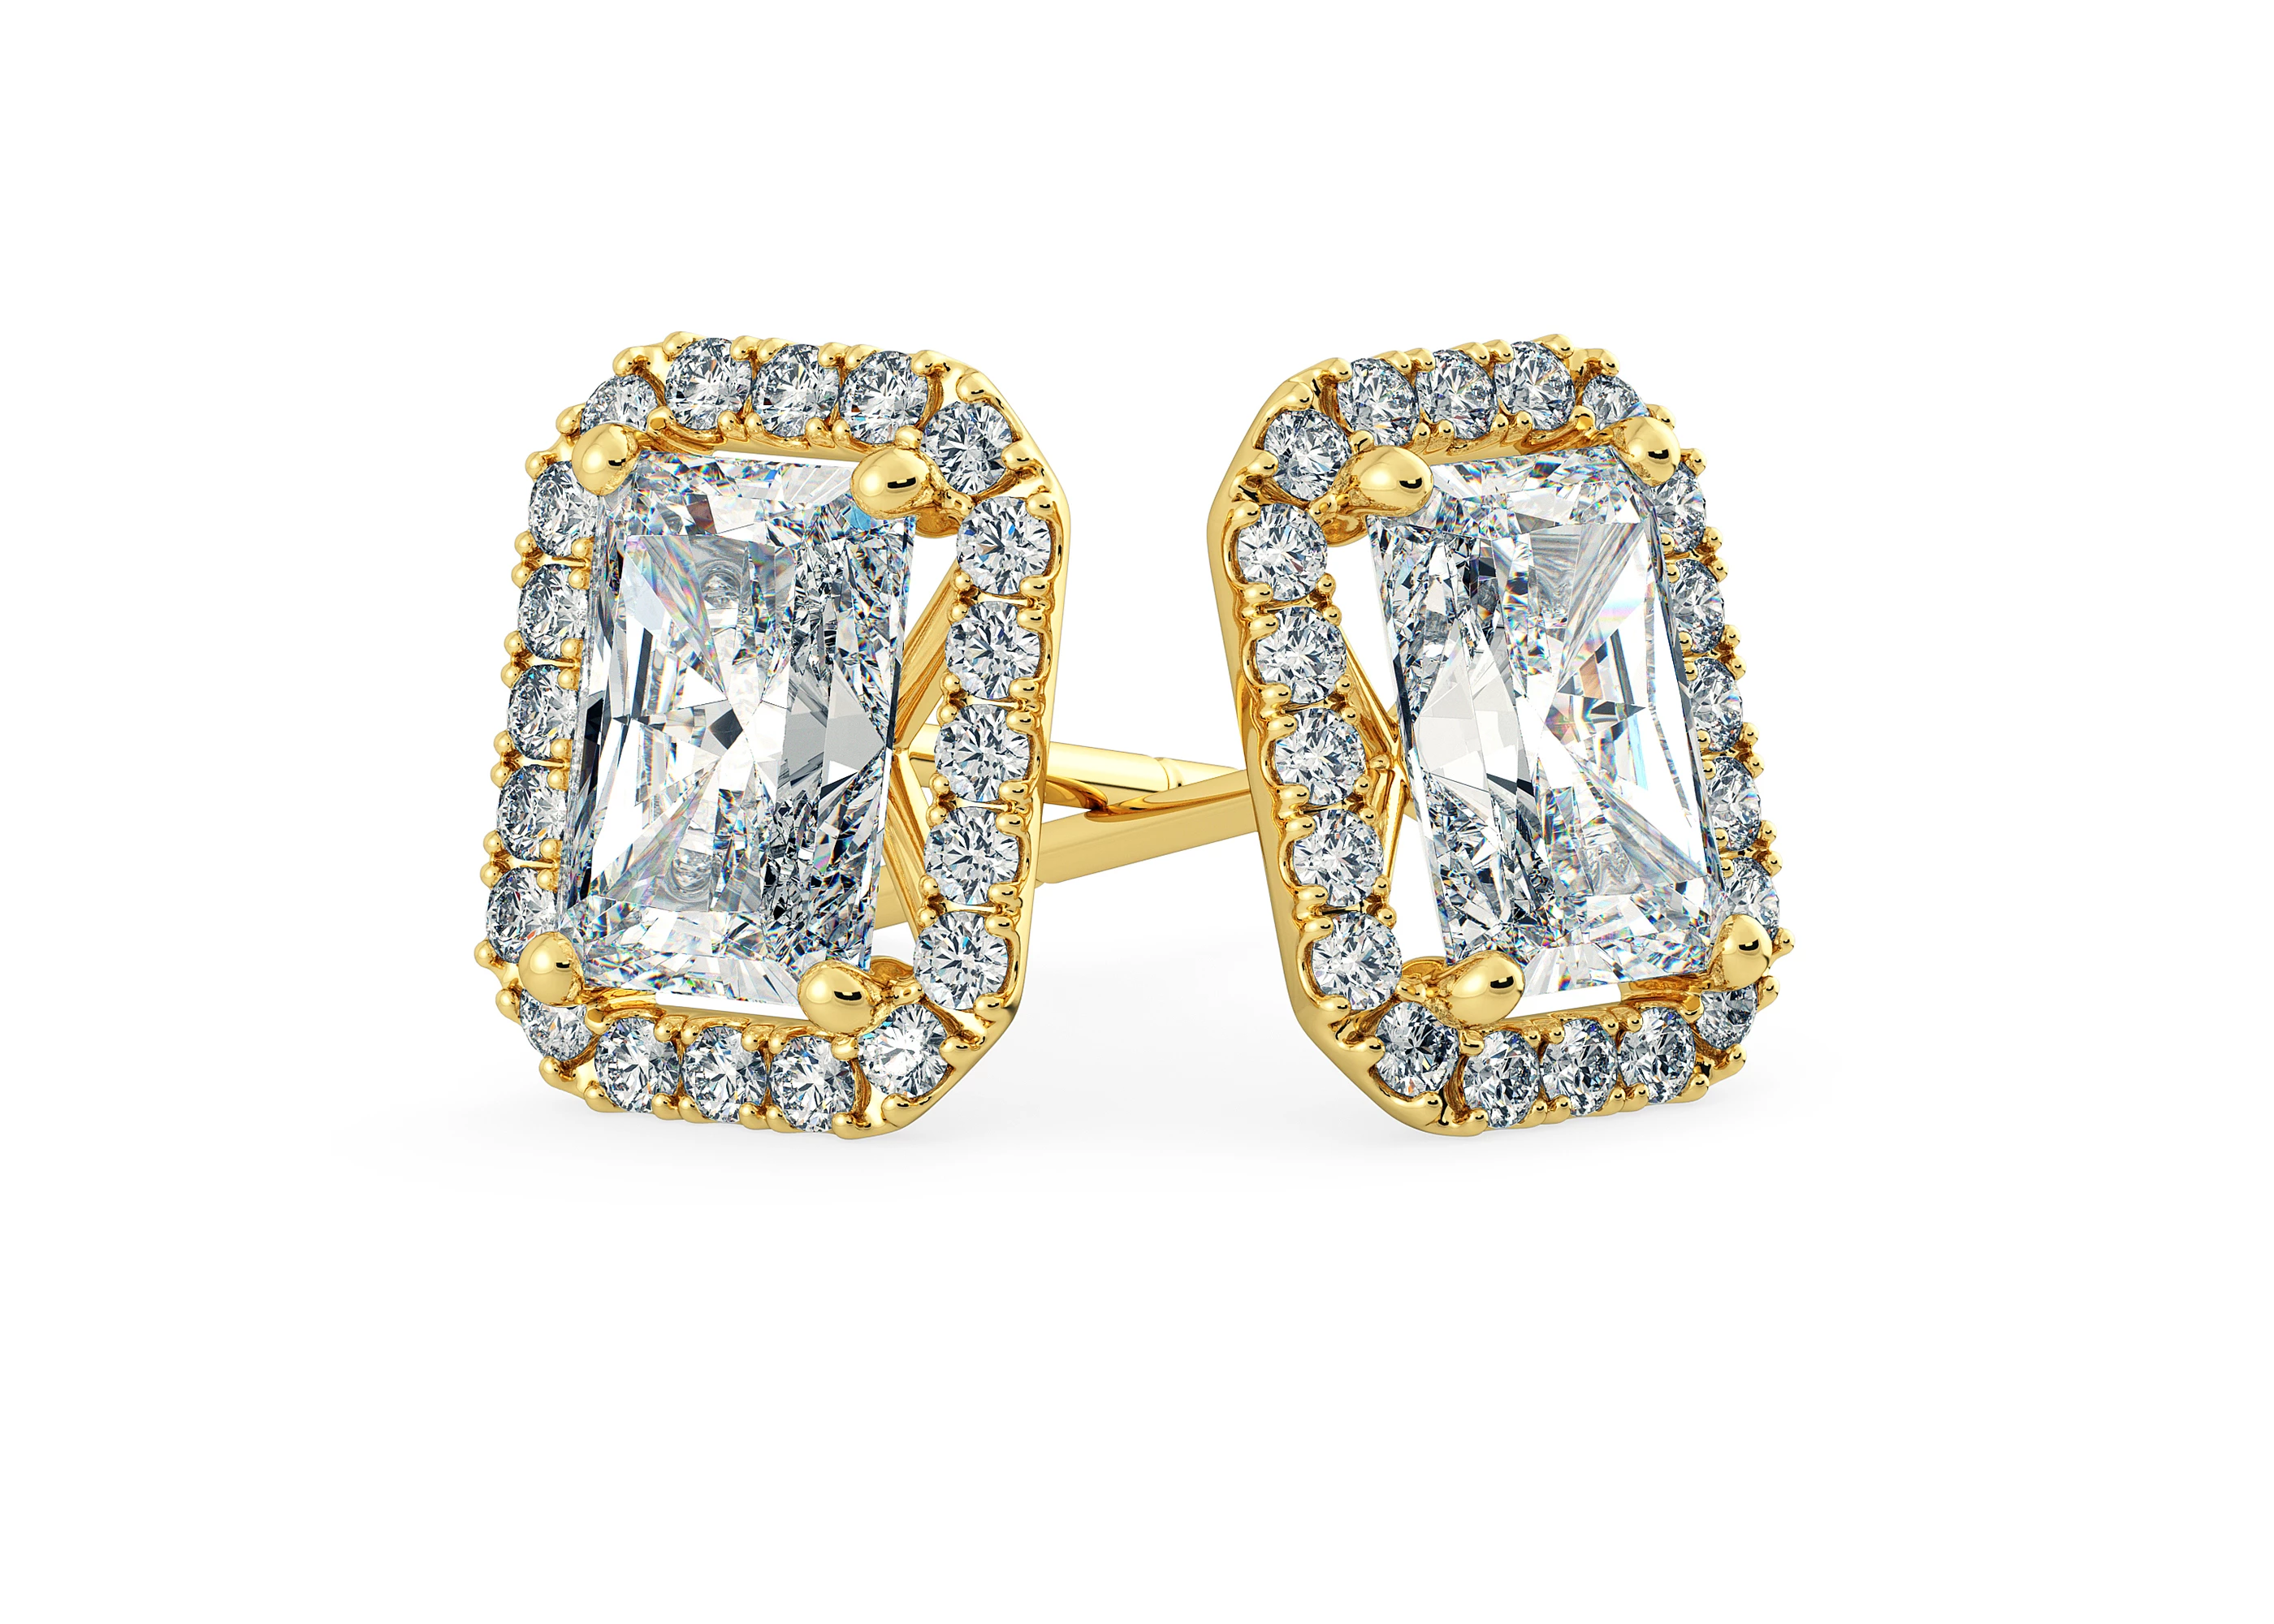 Bijou Emerald Diamond Stud Earrings in 18K Yellow Gold with Butterfly Backs